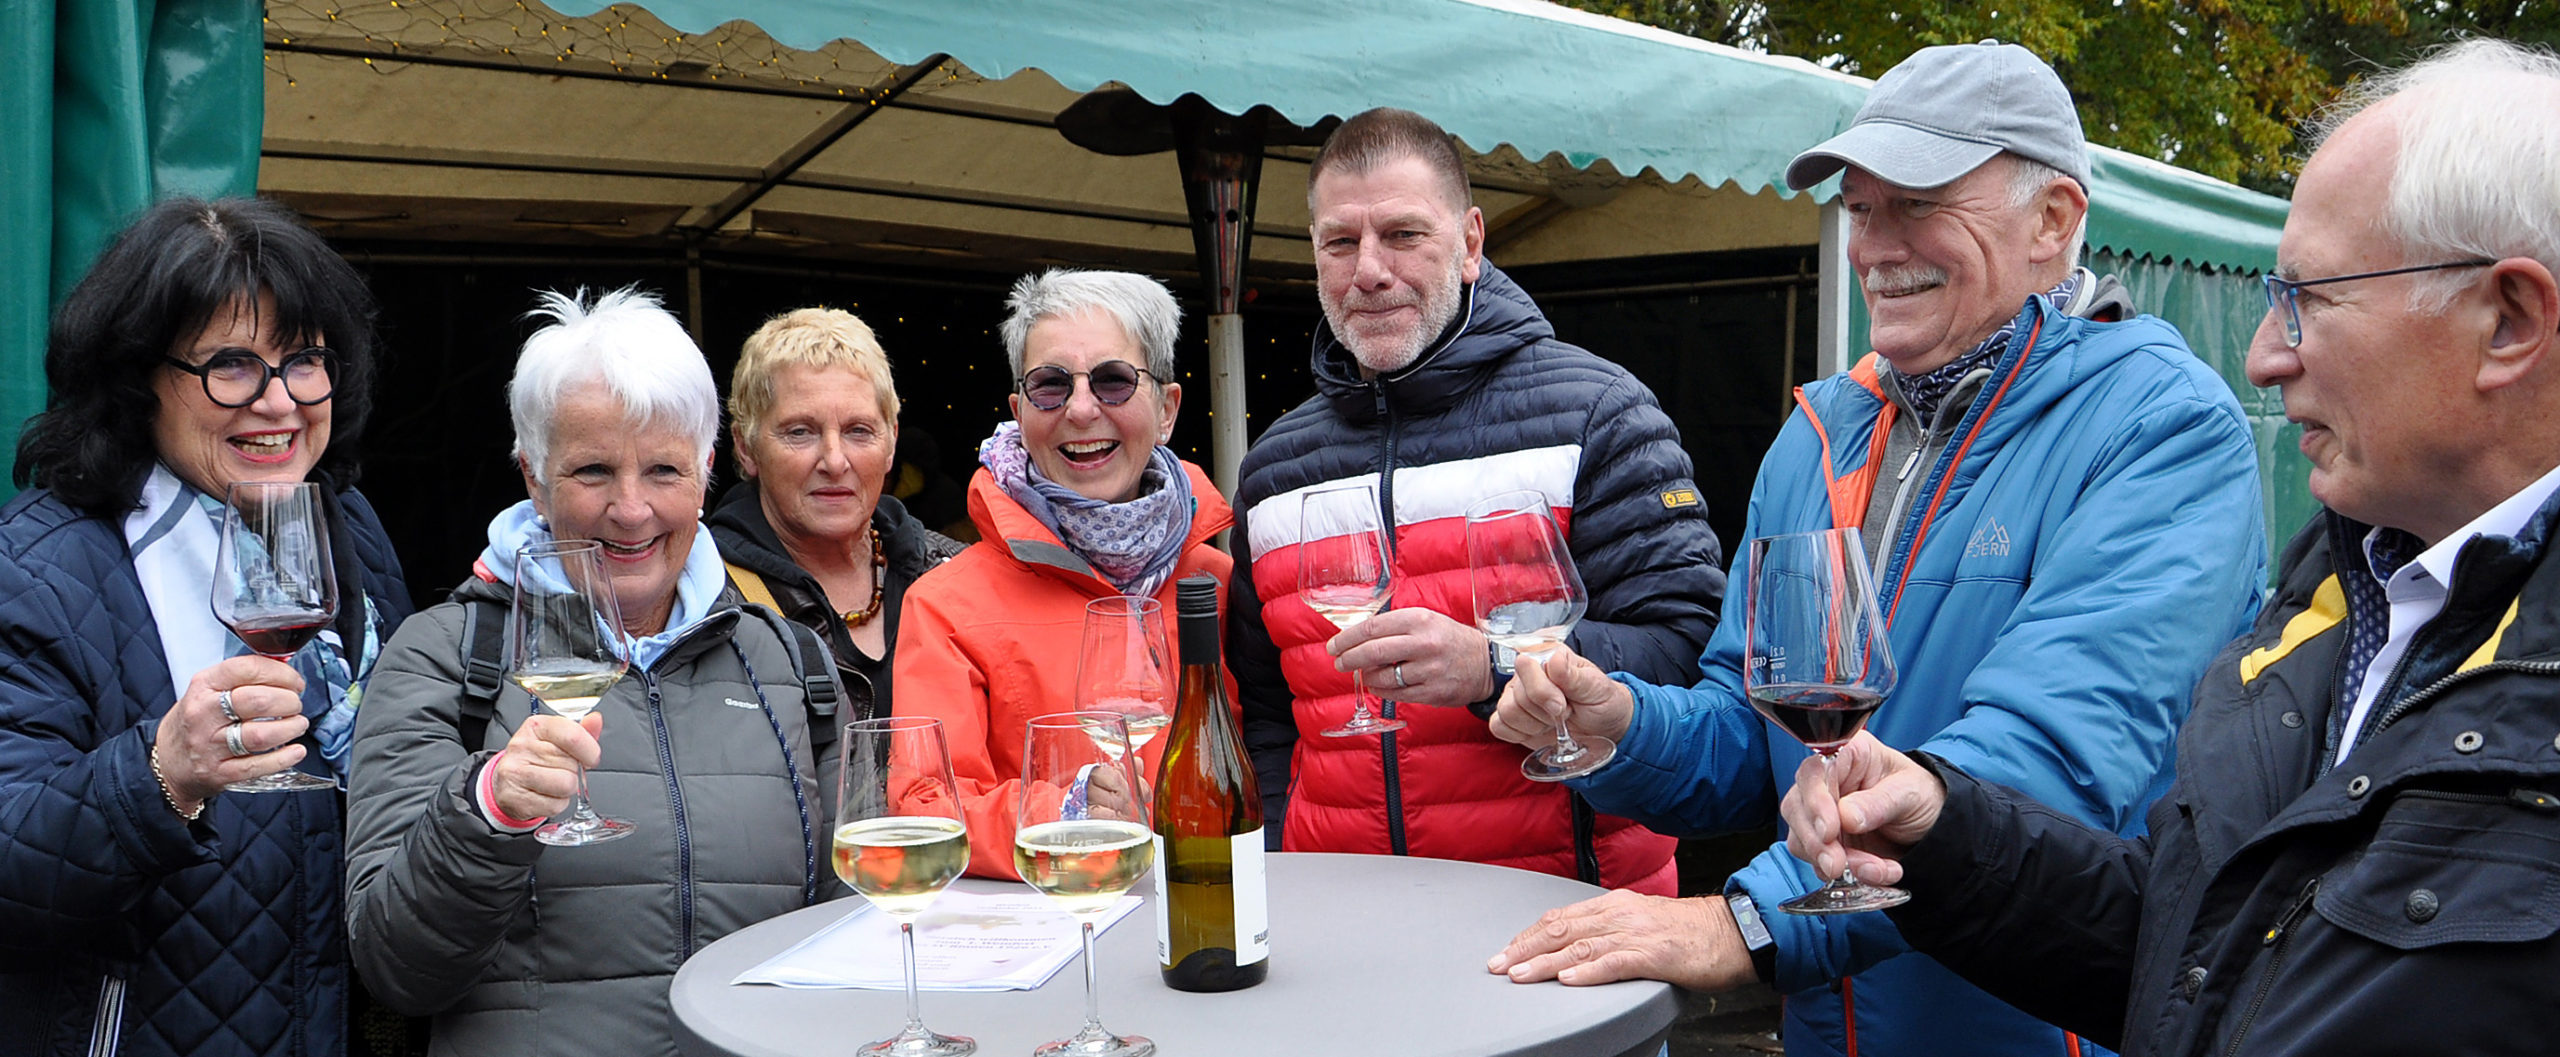 Auch diese Gruppe aus Kall ließ sich für die Flutopfer-Unterstützung der Hilfsgruppe Eifel Wein & Brot schmecken. Foto: Reiner Züll